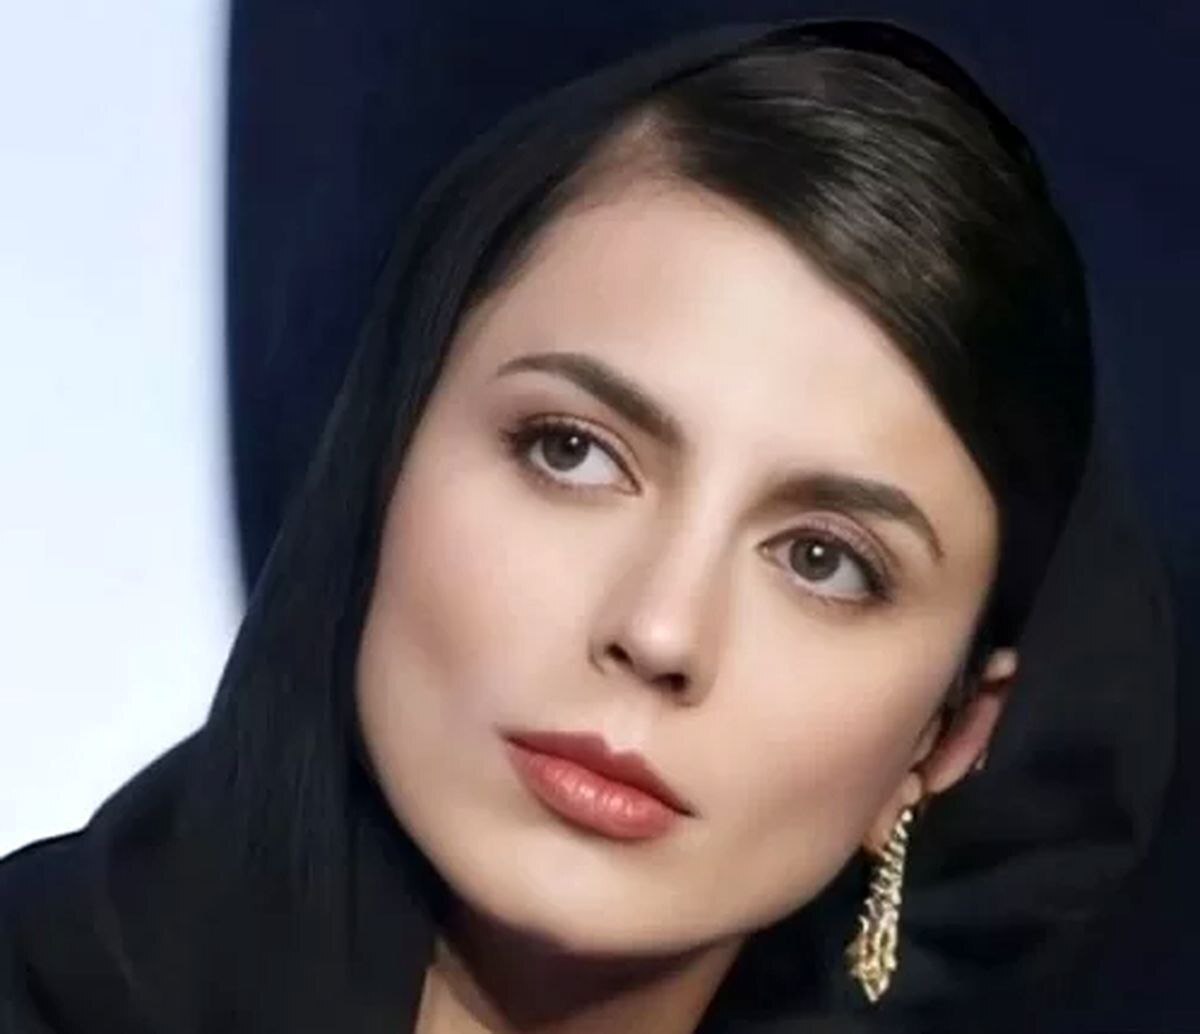 لیلا حاتمی در یک لیست جالب توجه | واکنش حاتیم به حضور در میان زیباترین زنان جهان